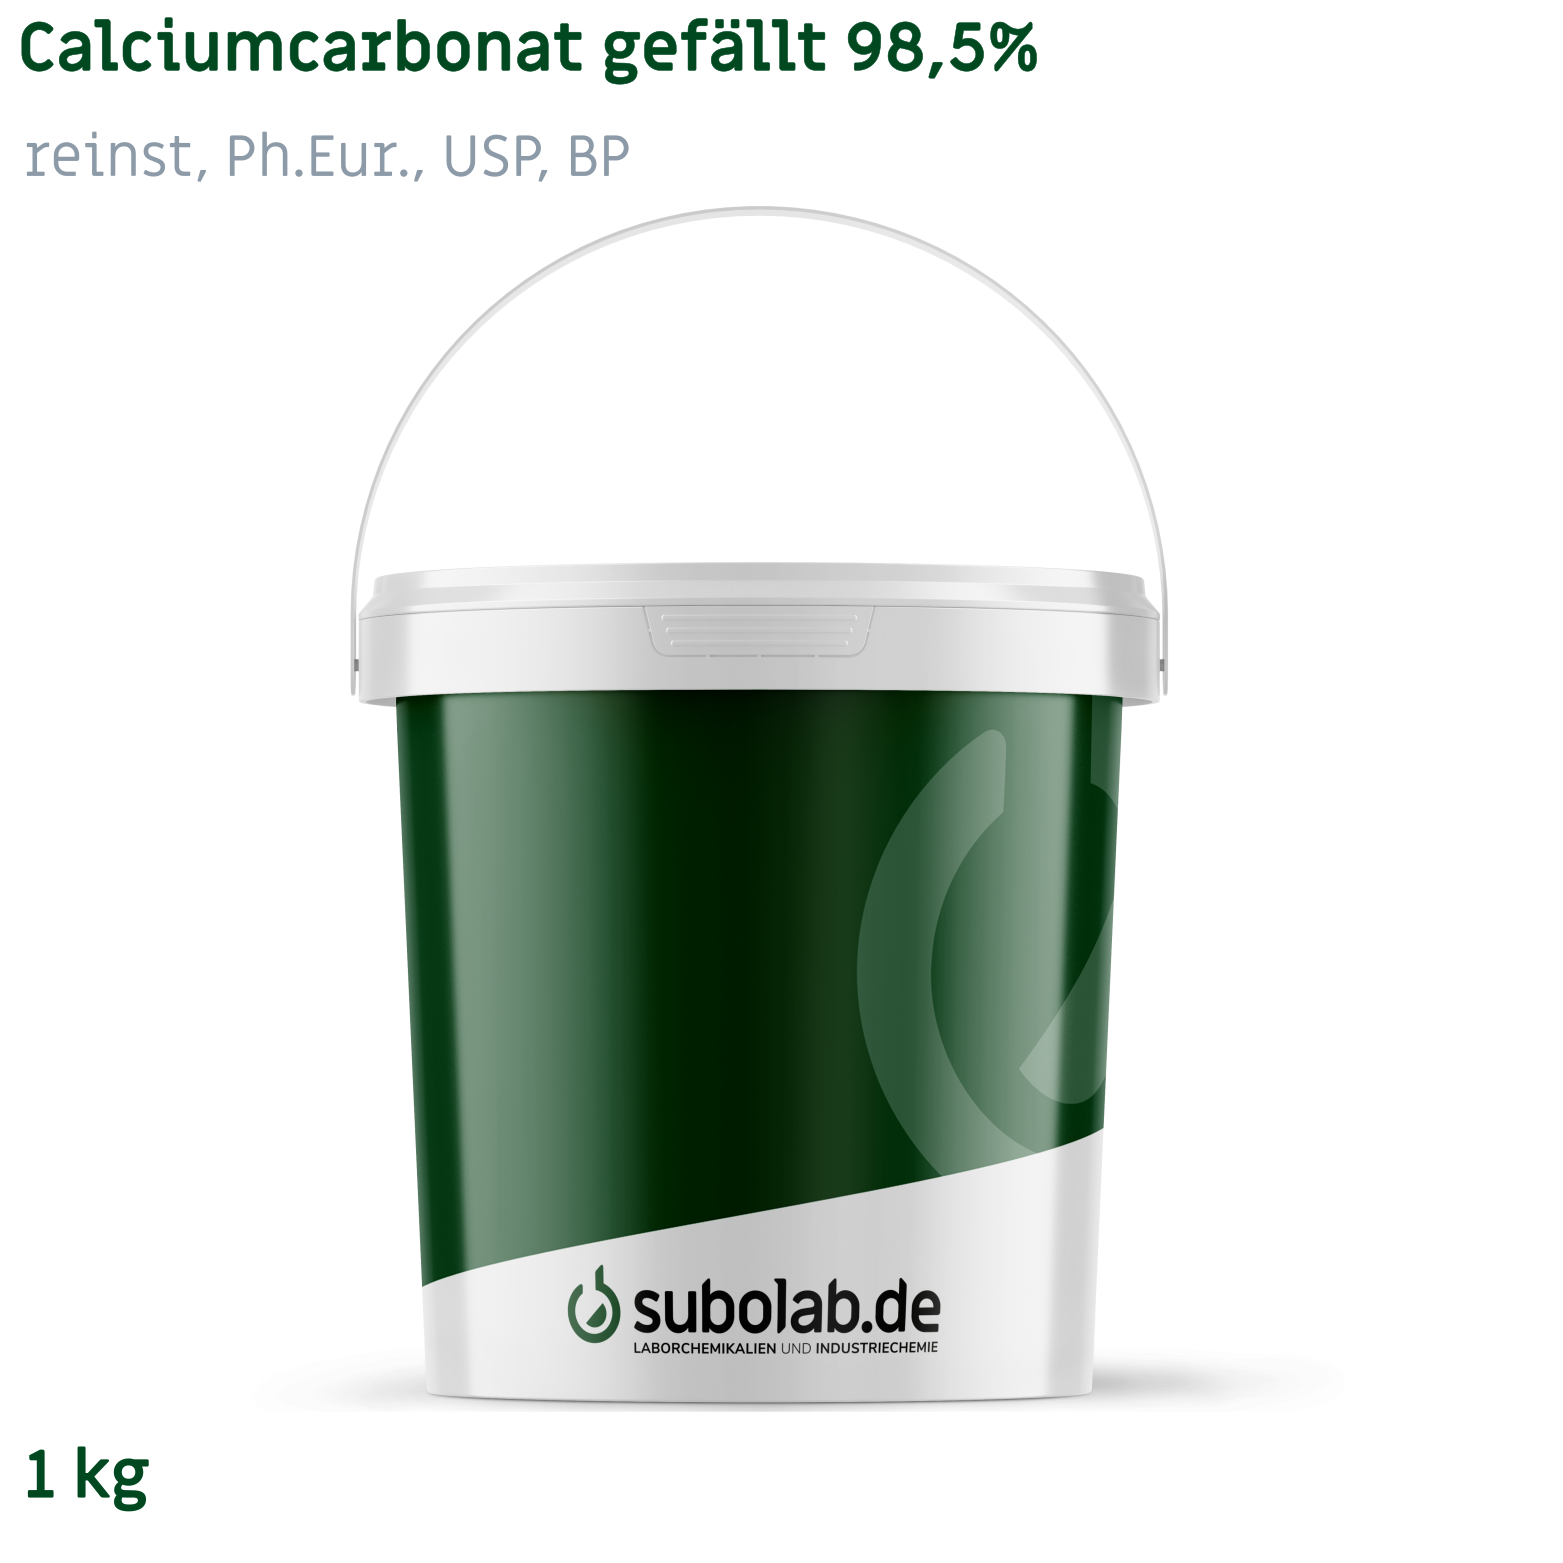 Bild von Calciumcarbonat gefällt 98,5% reinst, Ph.Eur., USP, BP (1 kg)